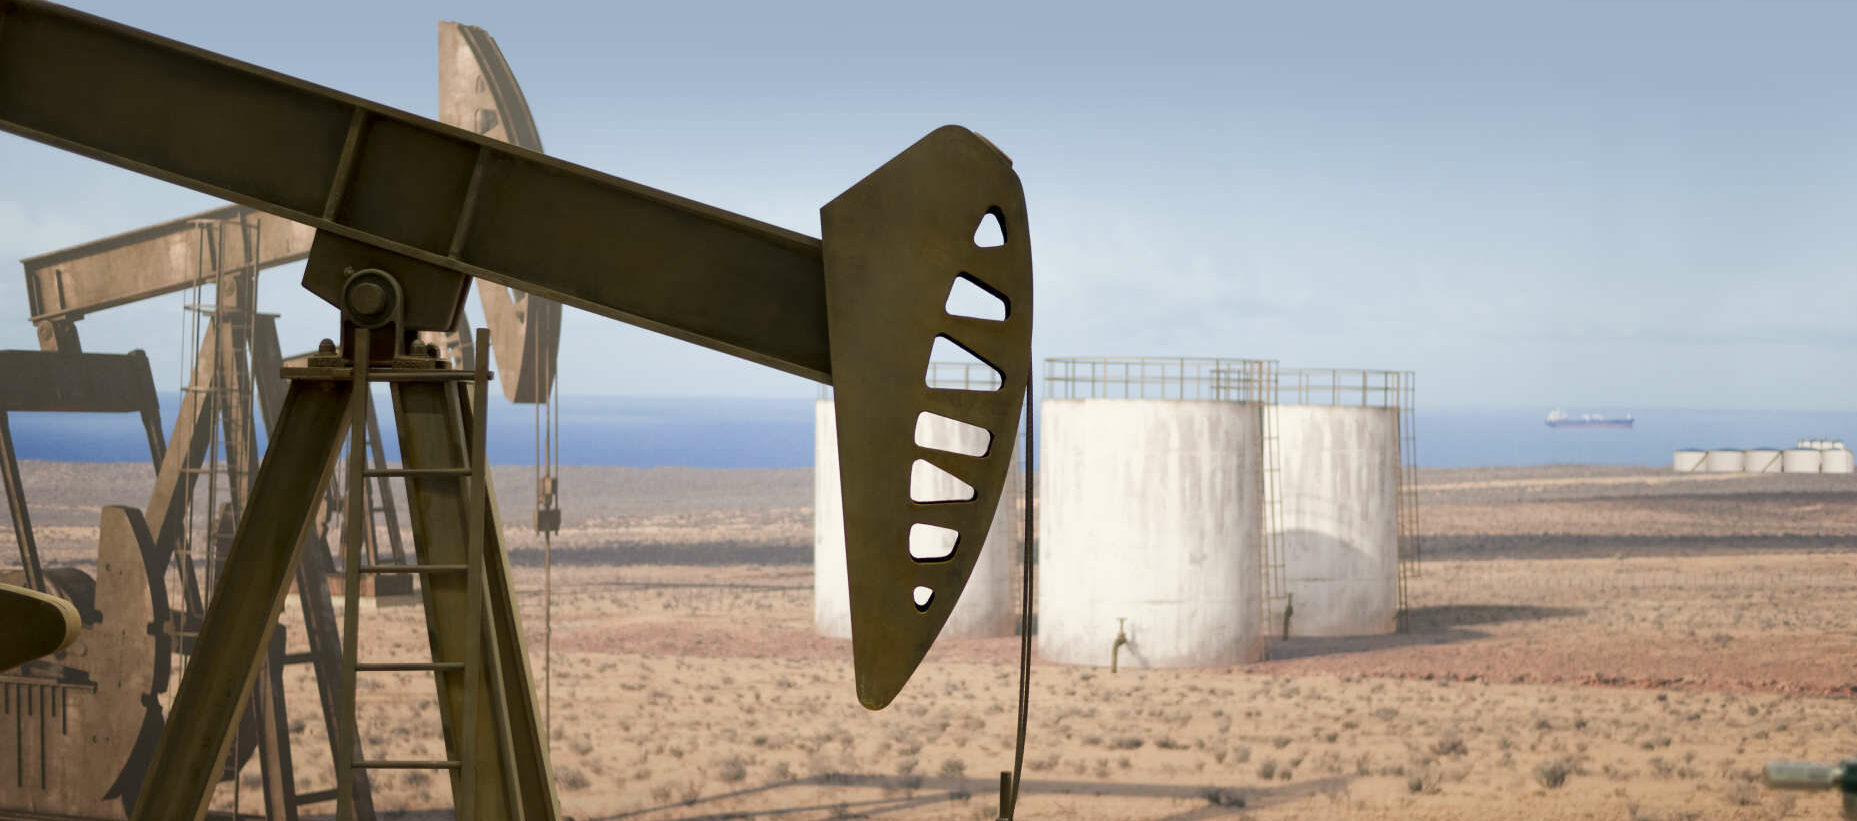 Die OPEC verringert im Mai und Juni ihre Förderproduktion um zehn Millionen Barrel pro Tag.